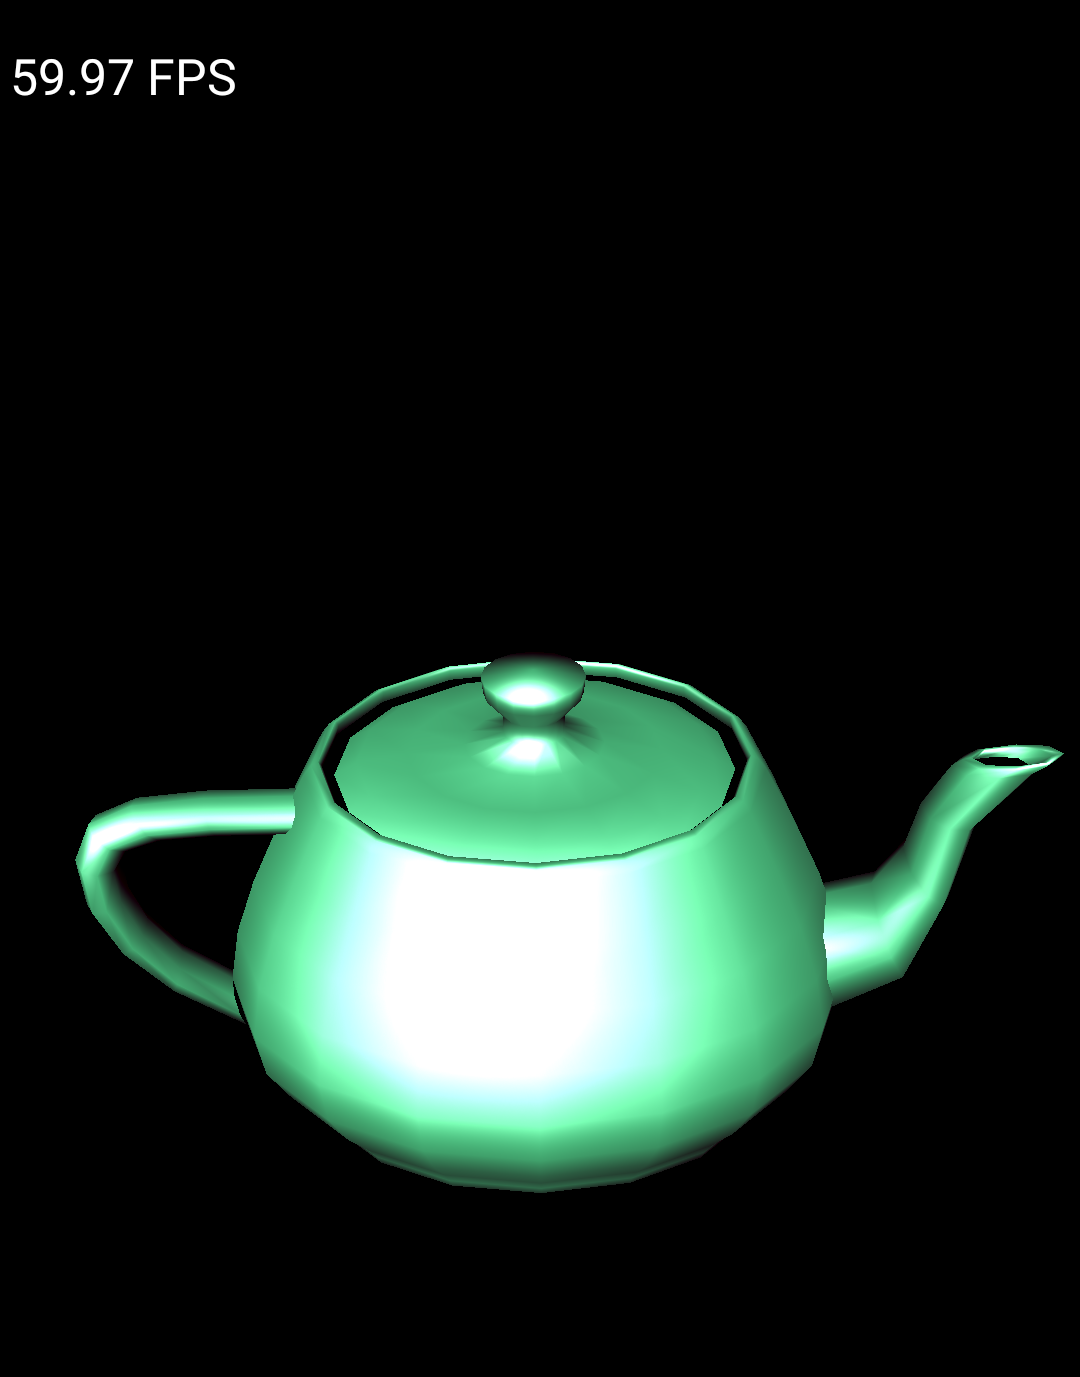 Mẫu Teapot chạy trên trình mô phỏng